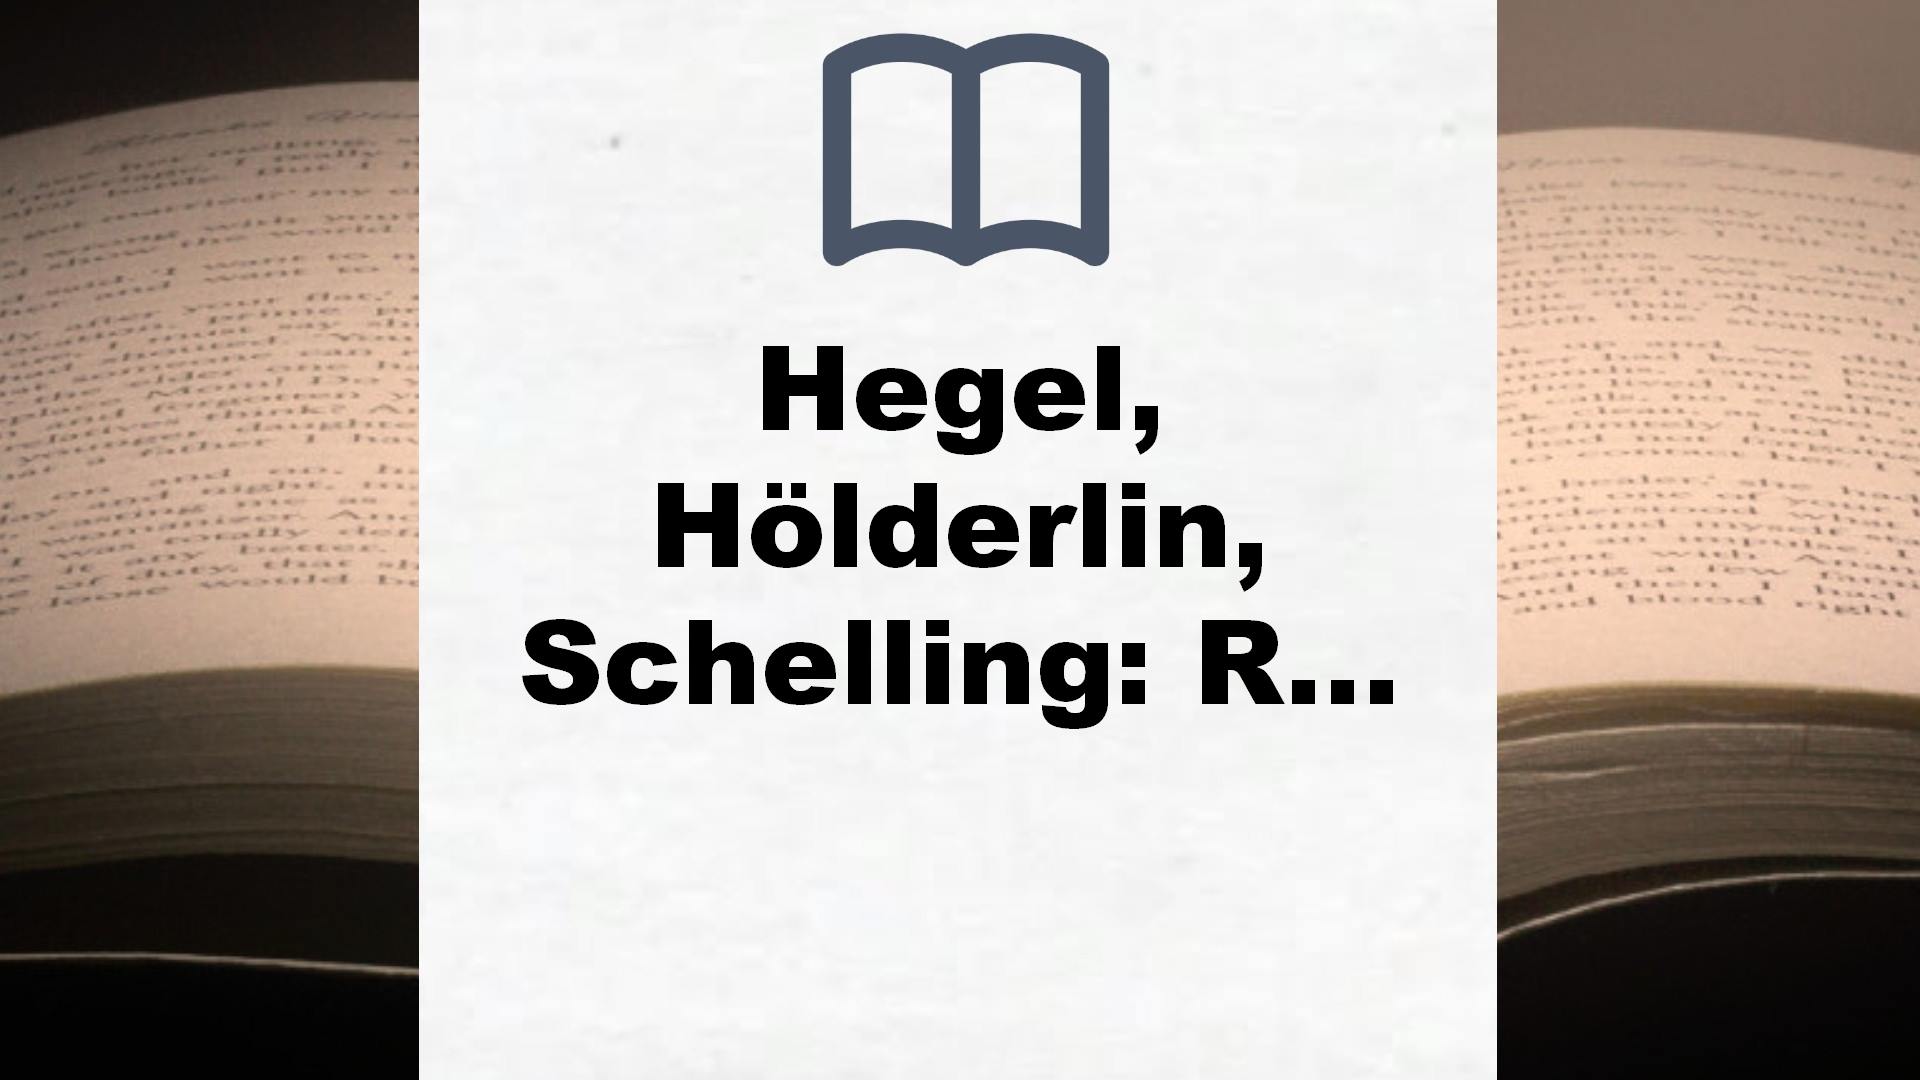 Hegel, Hölderlin, Schelling: Roman einer Männerfreundschaft – Buchrezension